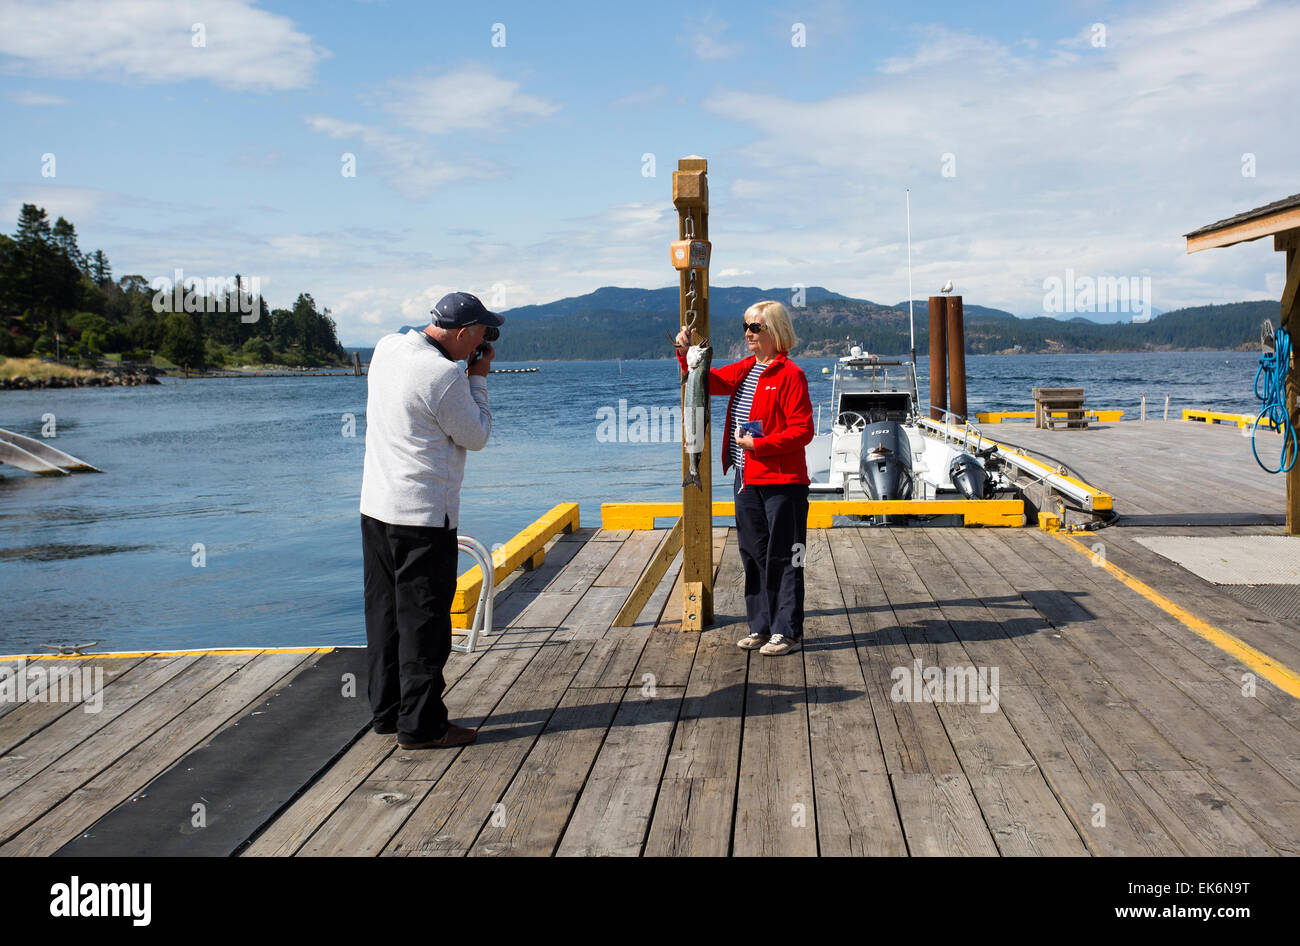 Amérique du Nord, le Canada, l'île de Vancouver, Campbell River, peintres Lodge resort de pêche au saumon Banque D'Images